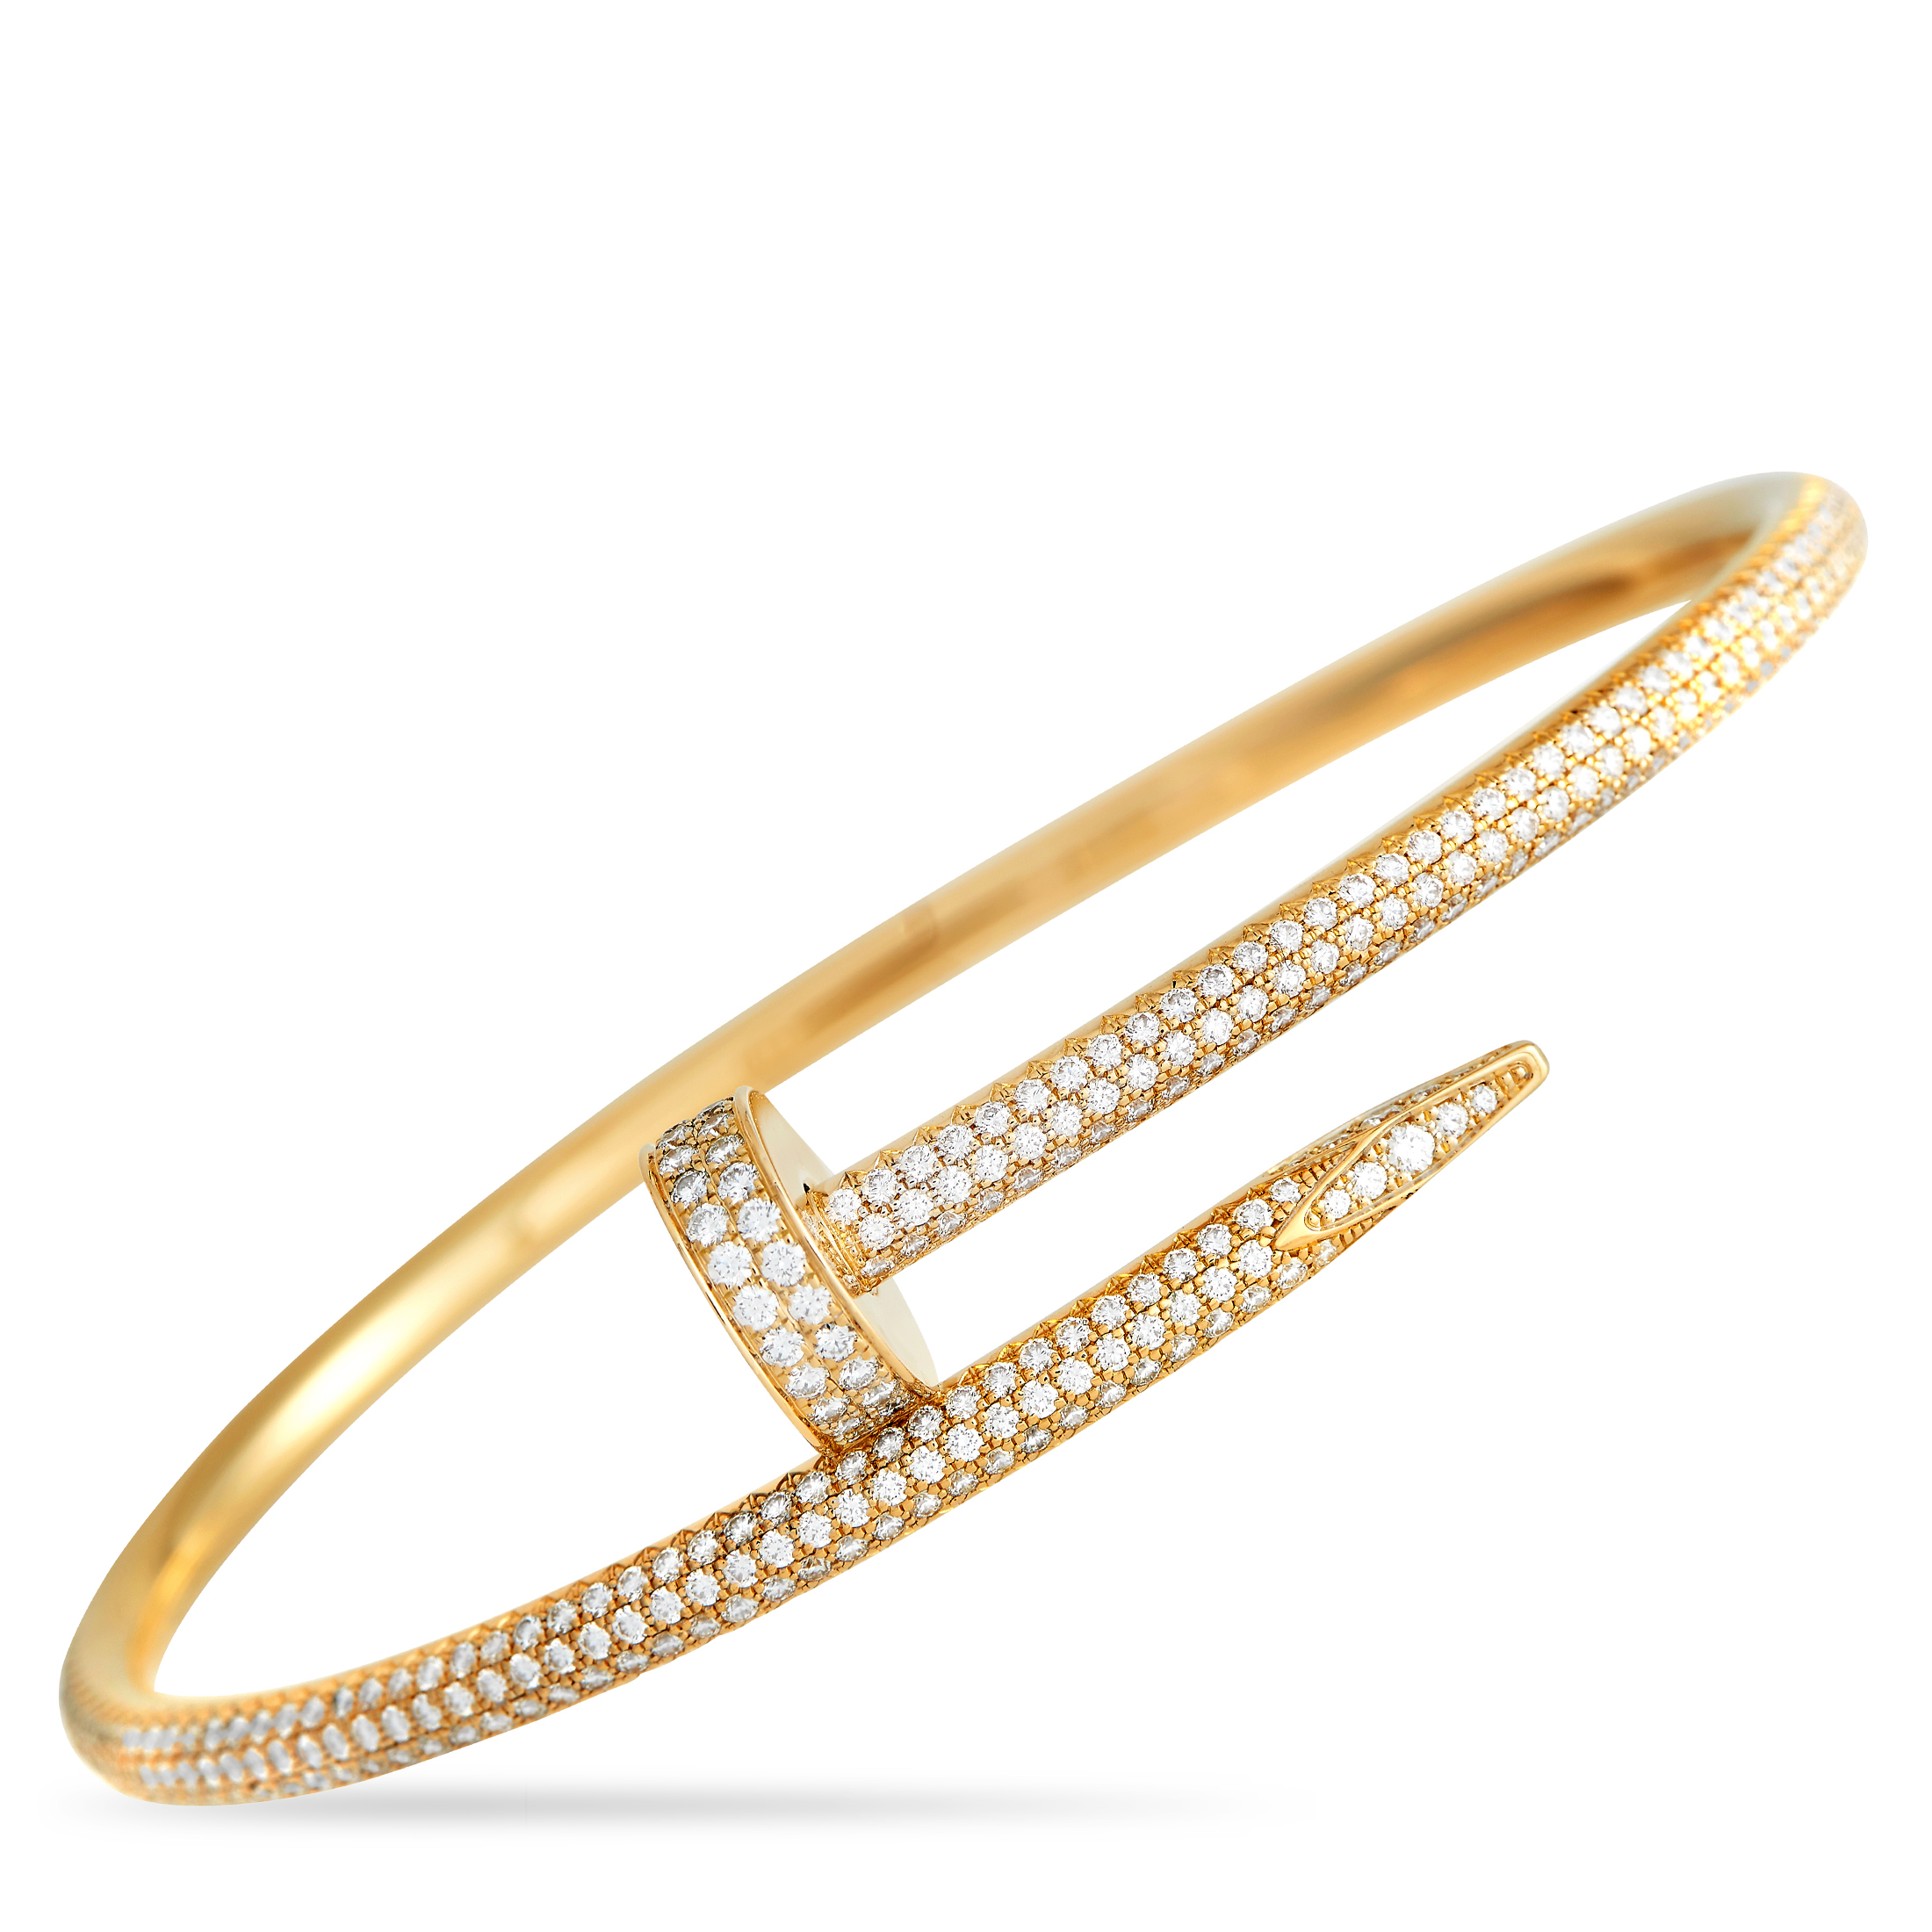 Authentic Cartier 18k White Gold Juste Un Clou Nail Bracelet